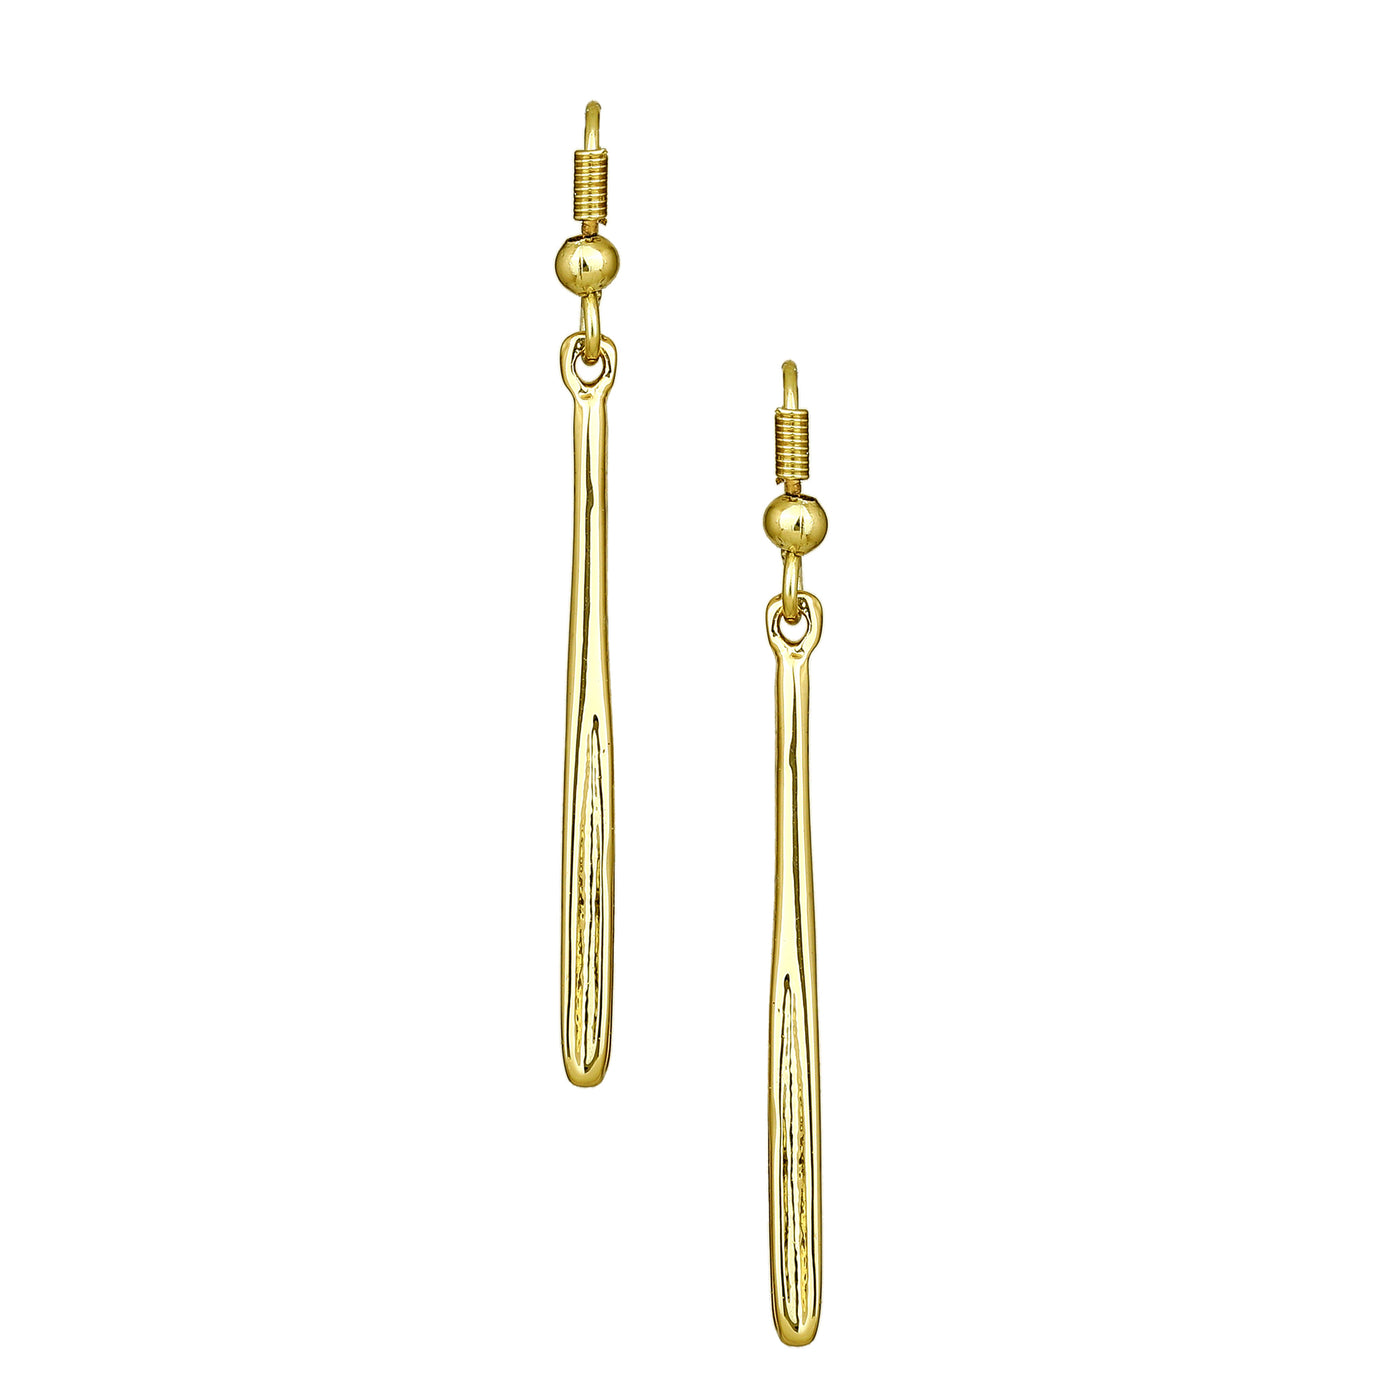 Estele 24 Kt Gold Plated Wicket Dangle Earrings for women